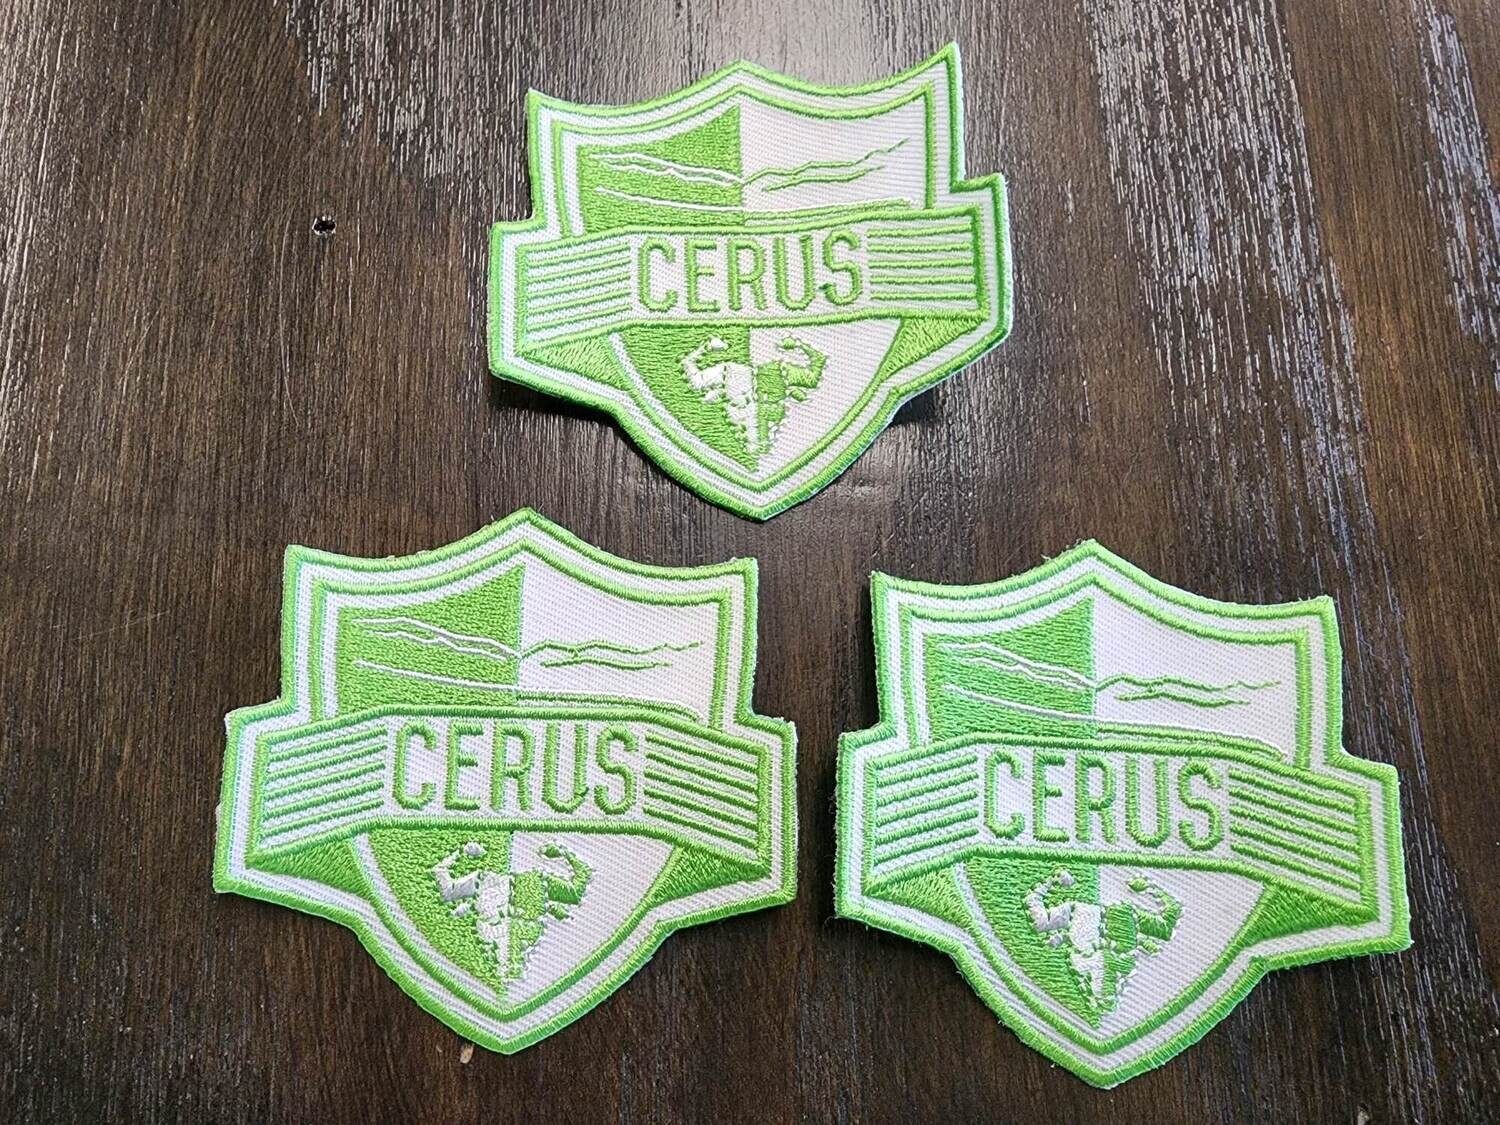 Cerus Badge/Patch